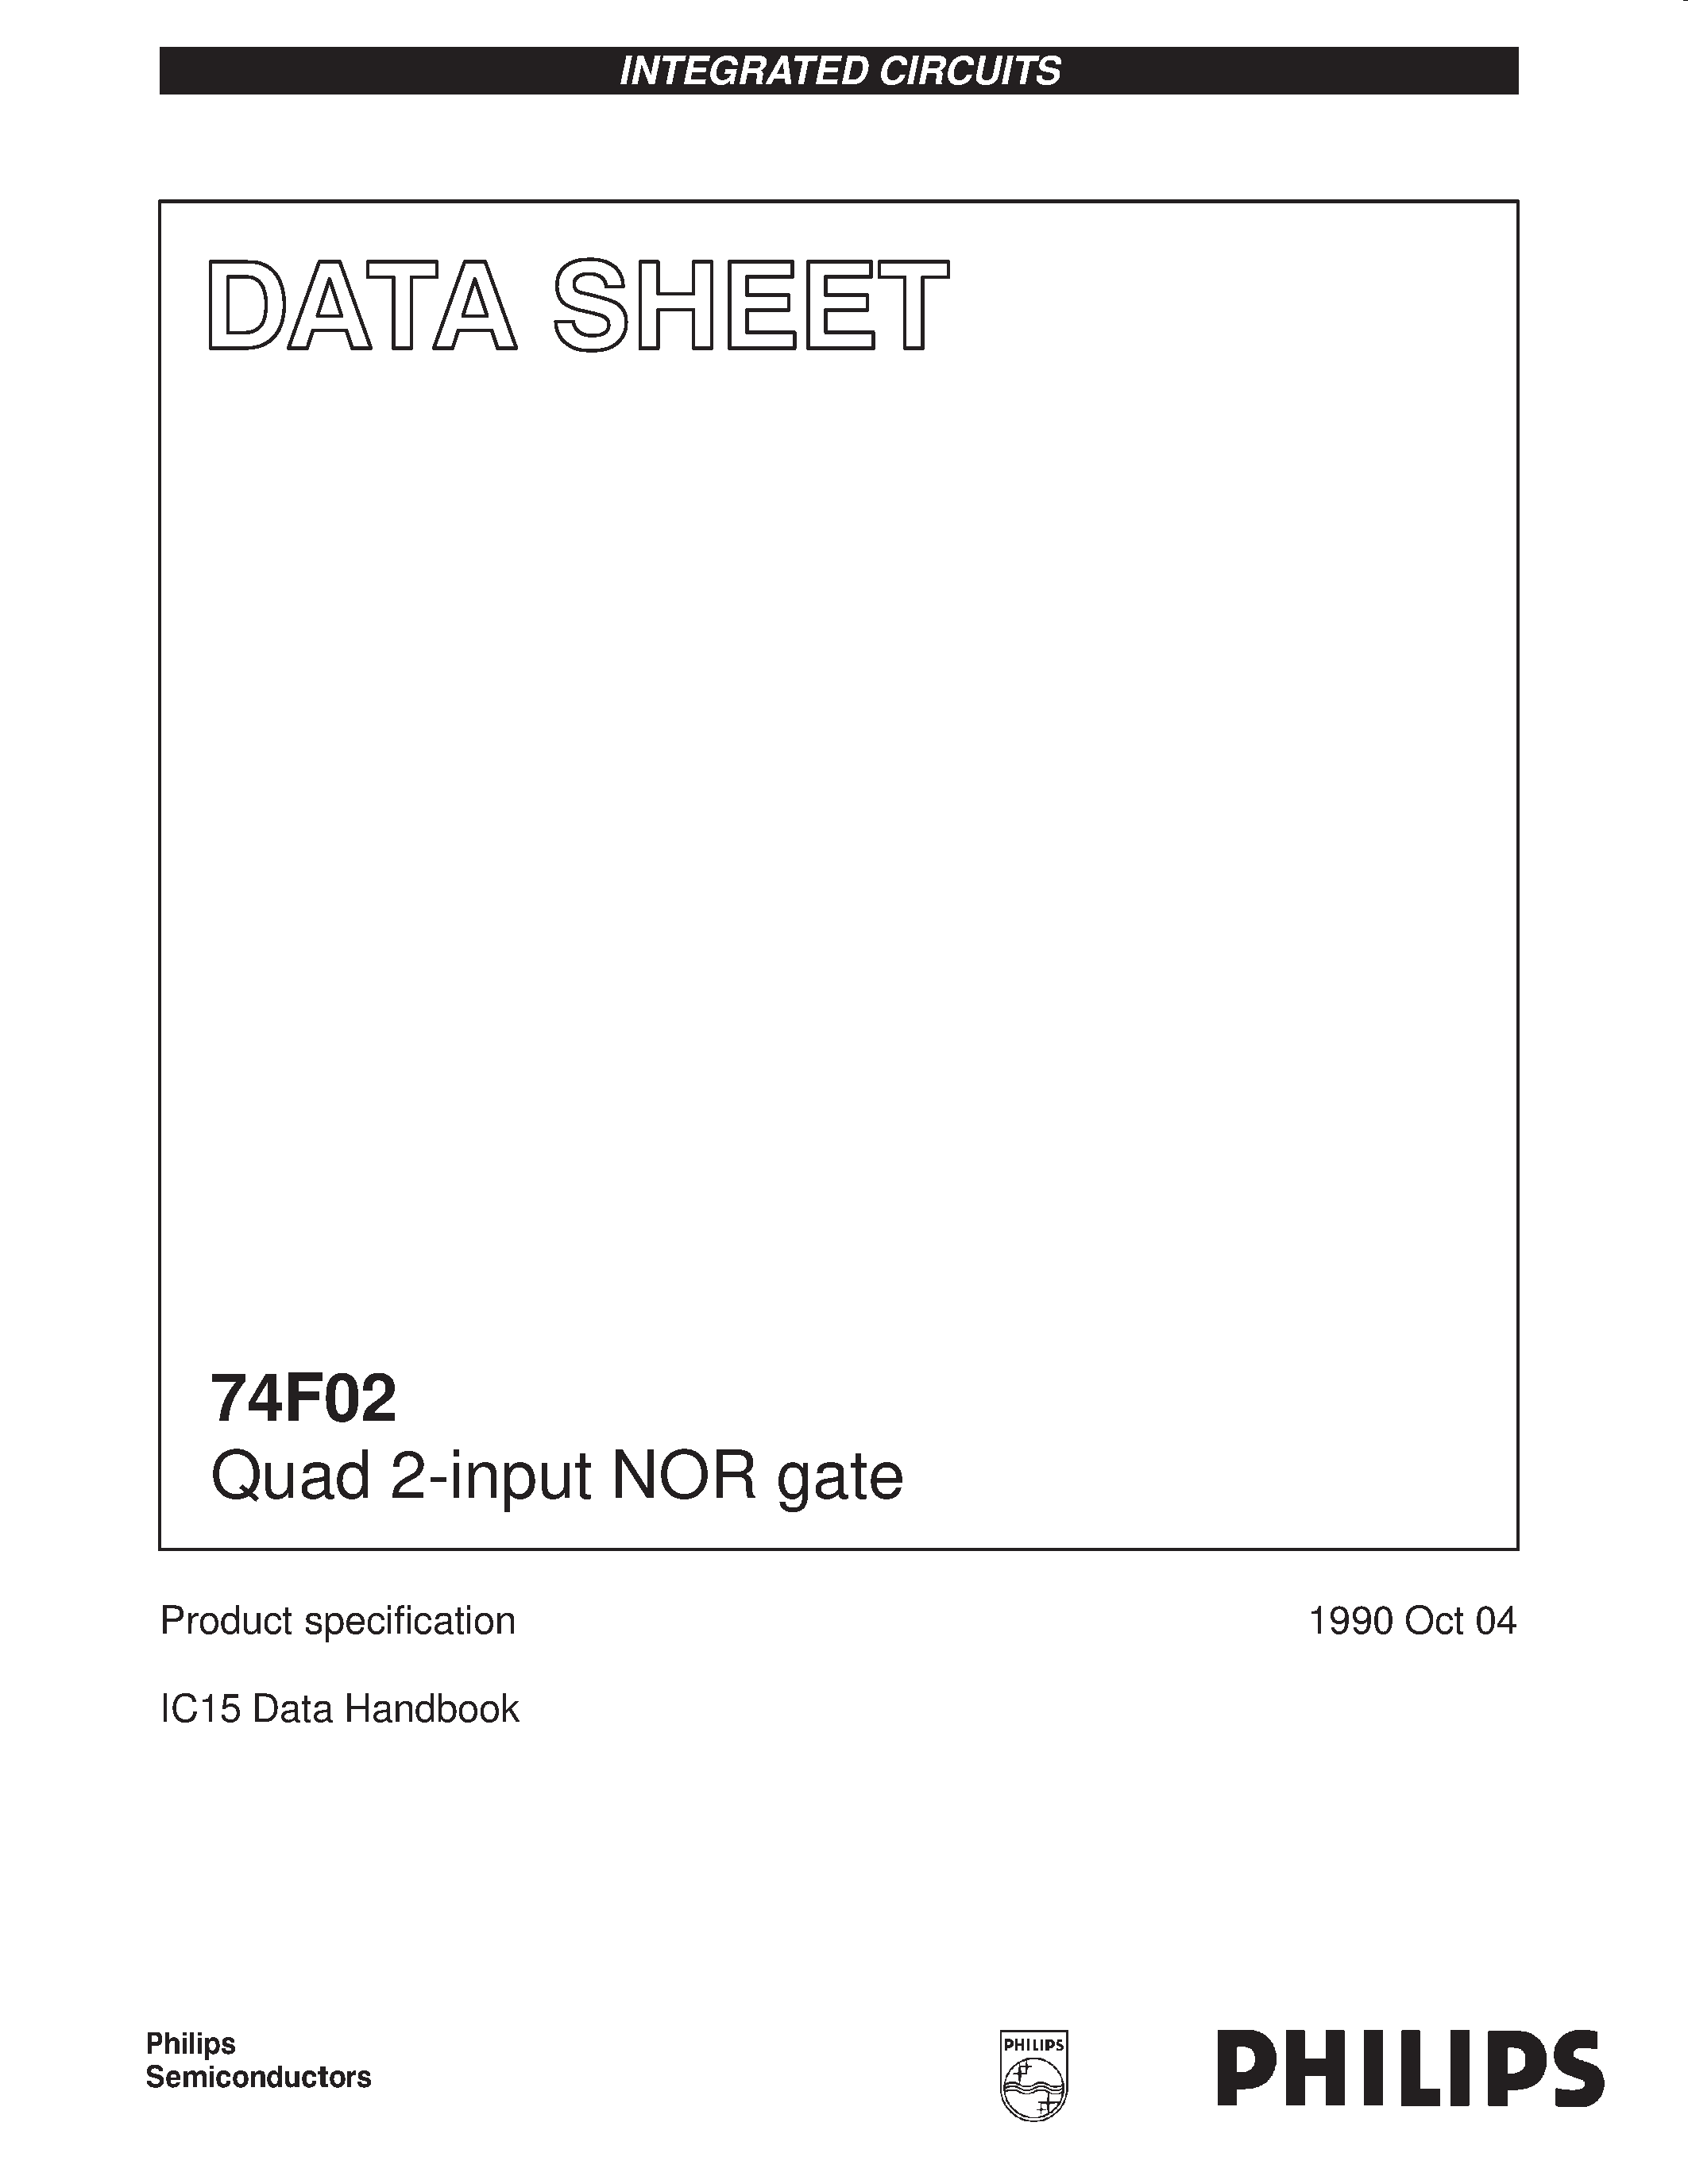 Даташит 74F02 - Quad 2-input NOR gate страница 1